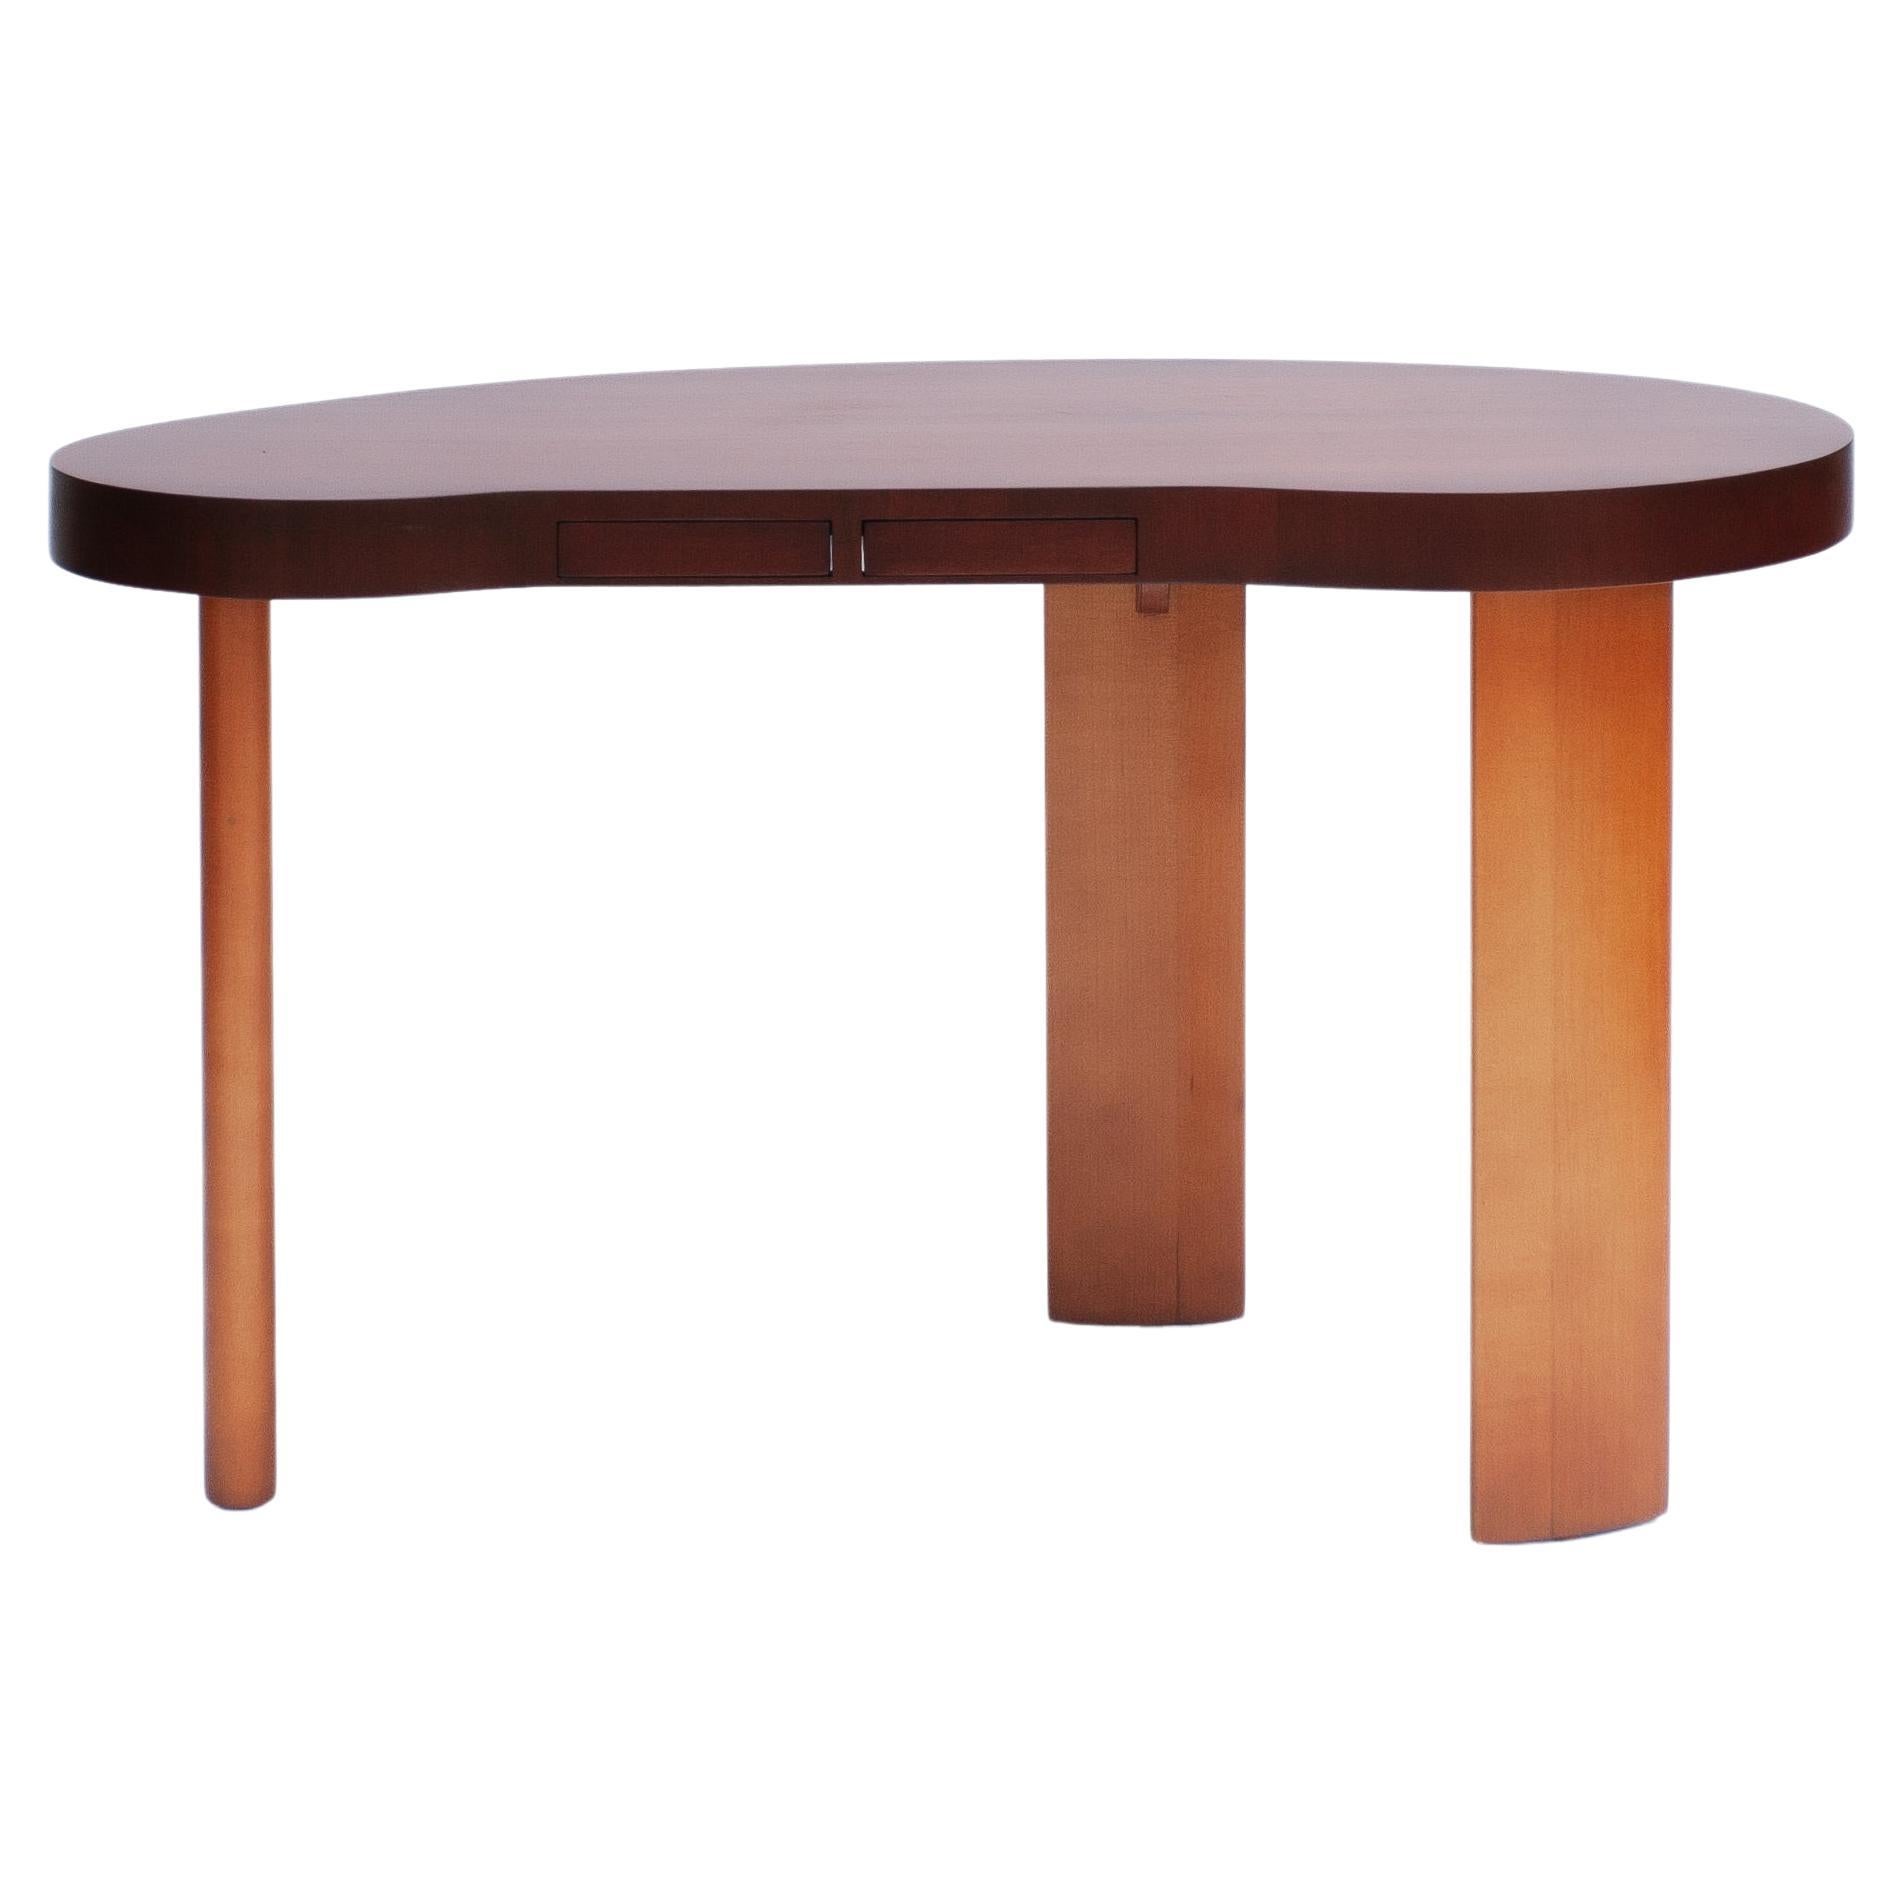 Paul Frankl, ein renommierter amerikanischer Designer des 20. Jahrhunderts, schuf in Collaboration mit der Johnson Furniture Company ein zeitloses Meisterwerk - einen nierenförmigen Schreibtisch, der Funktionalität und Raffinesse miteinander